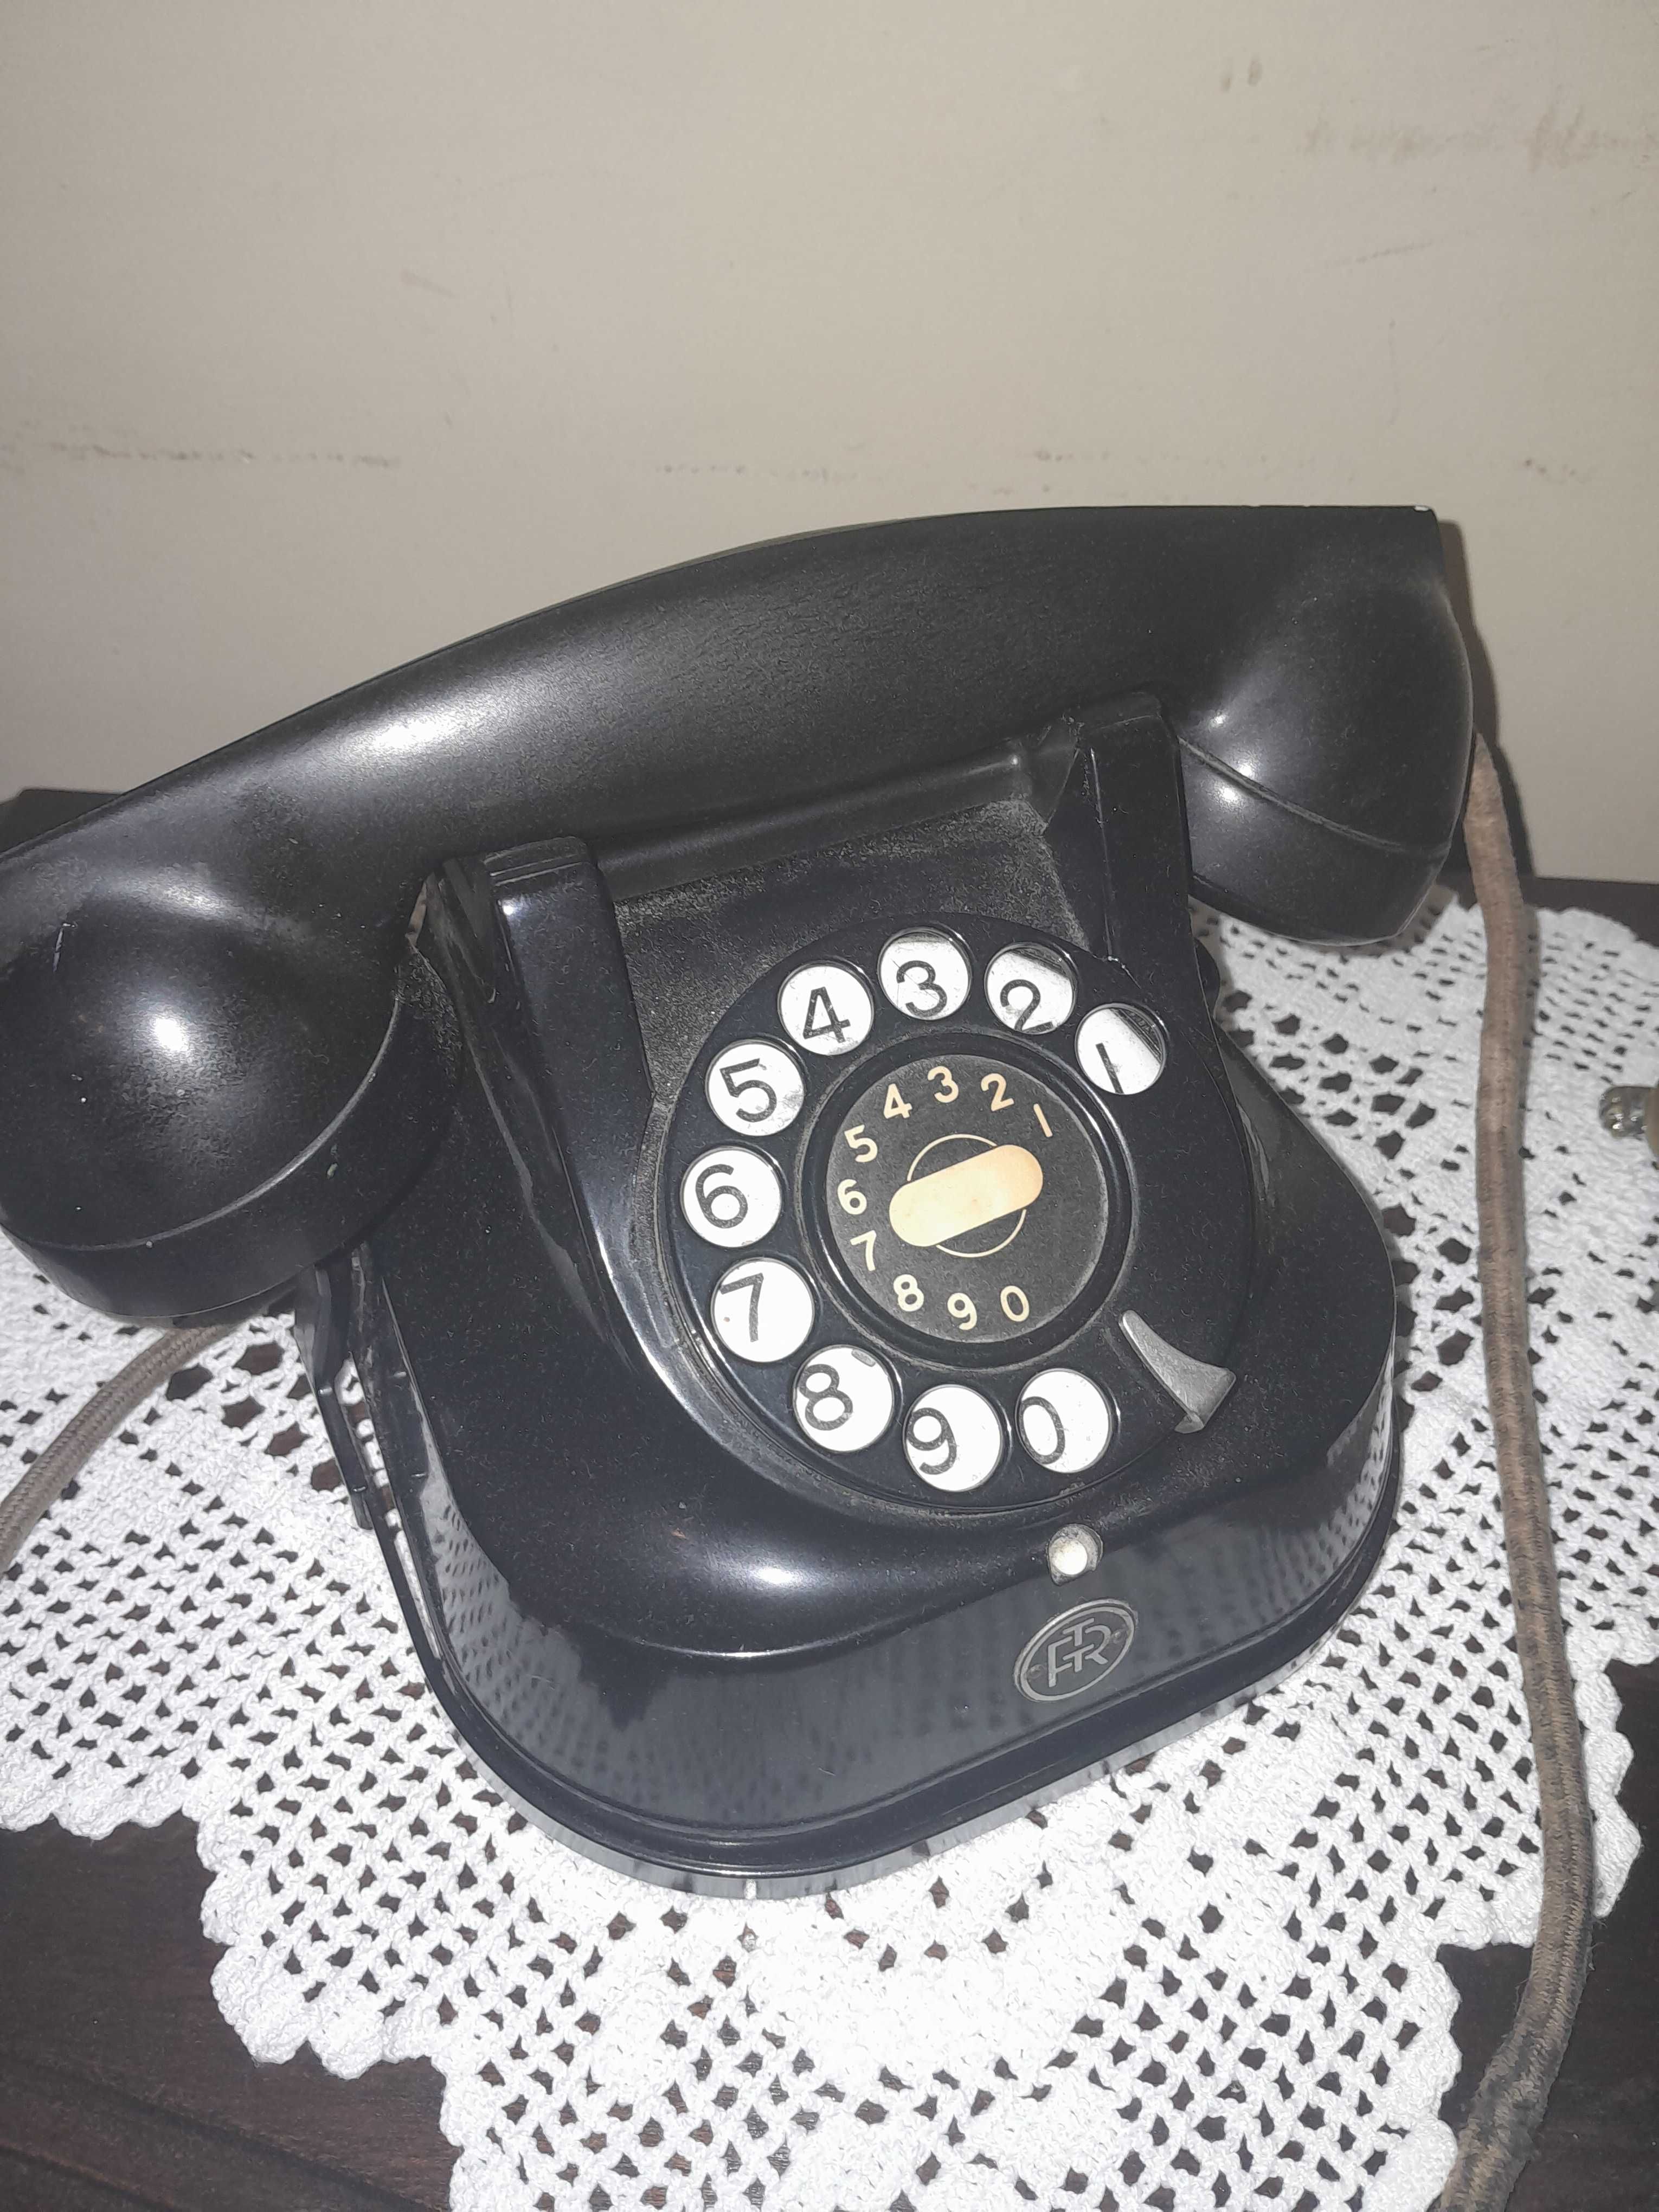 Vendo telefone antigo ,estimado ,veio da belgica